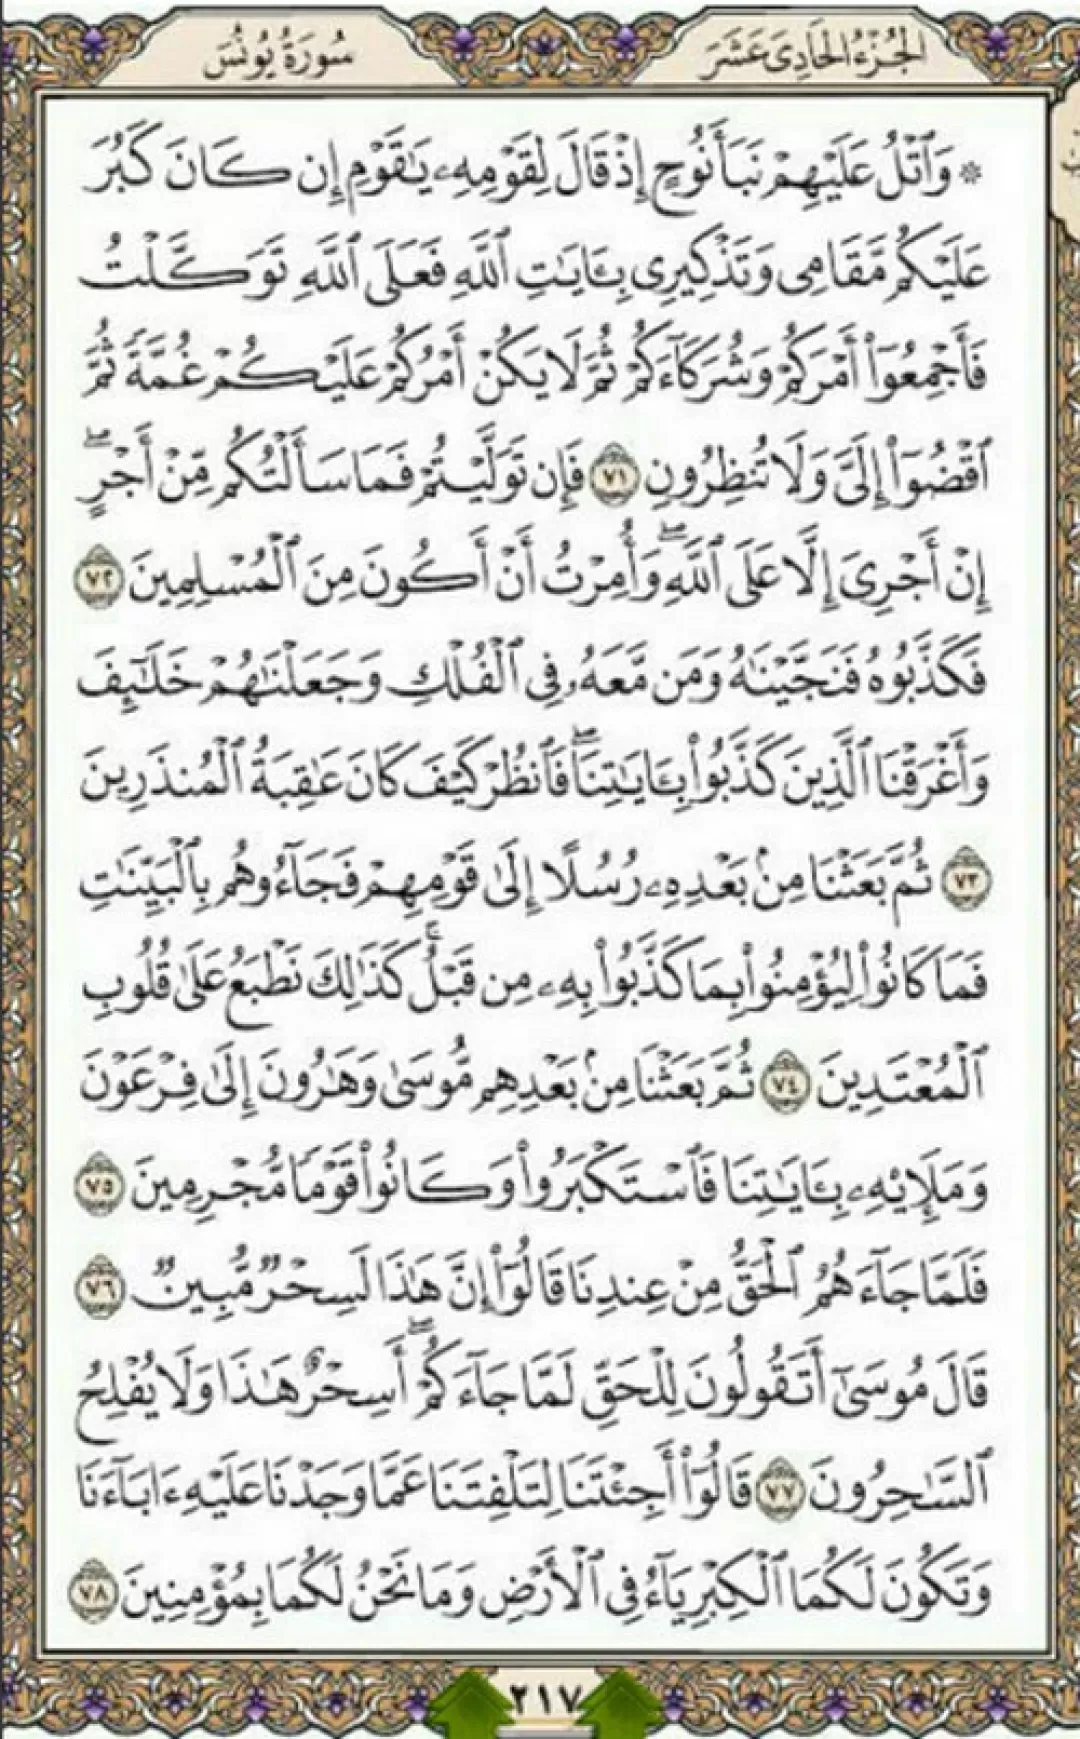 روزانه یک صفحه با آیات قرآن حکیم